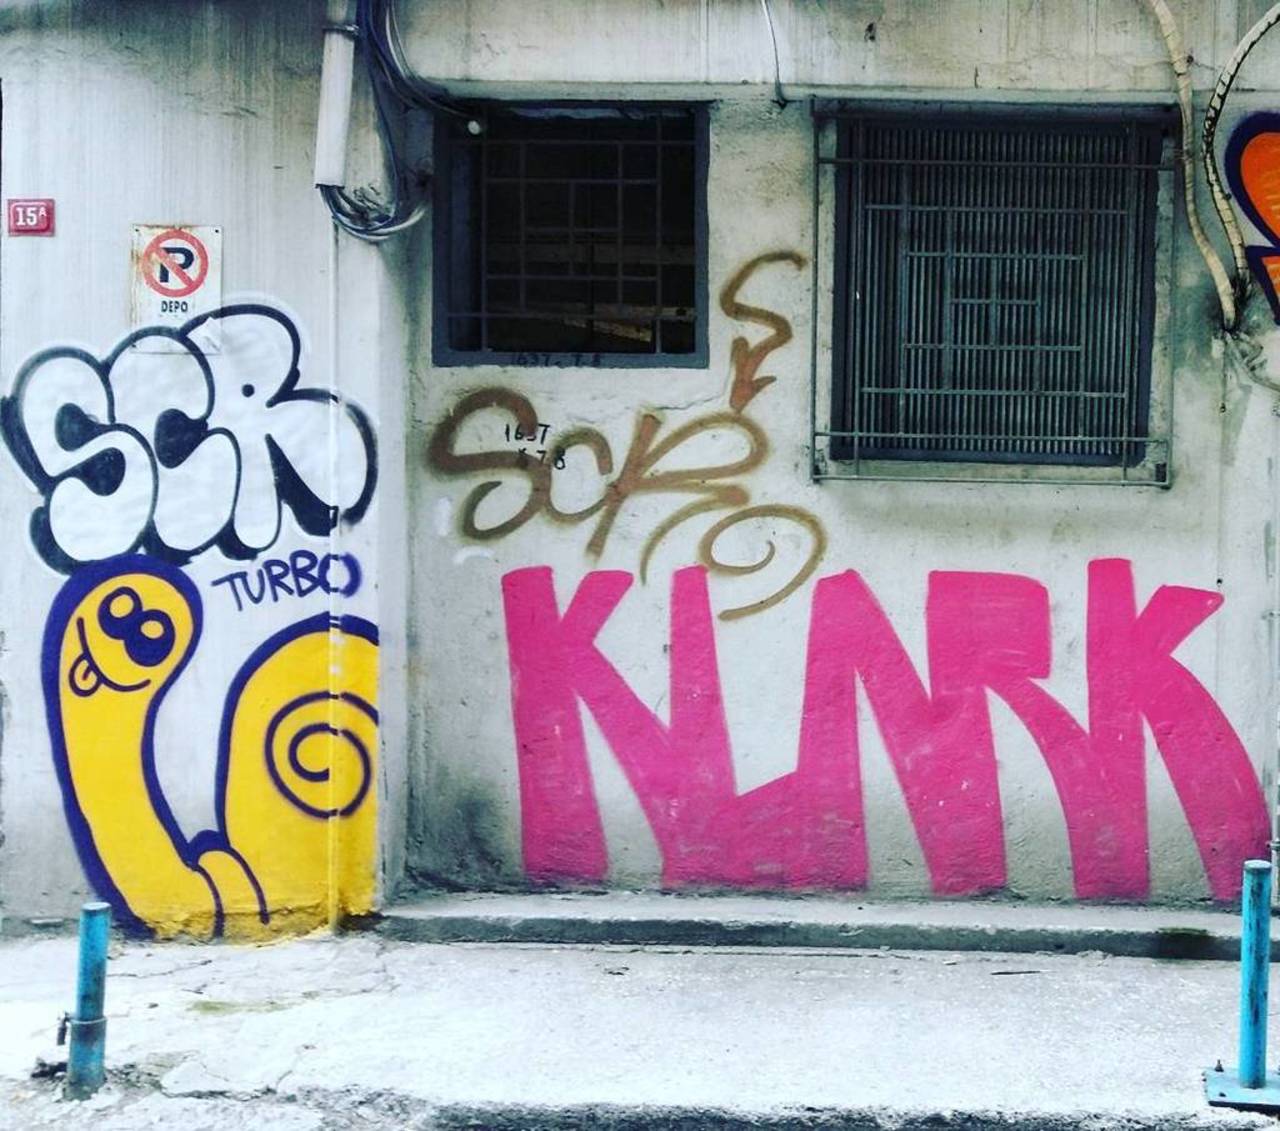 By @tuncdindas and @enklarkkent ? @dsb_graff #dsb_graff @rsa_graffiti @streetawesome #streetart #urbanart #graffiti… http://t.co/tmRn9iD1th